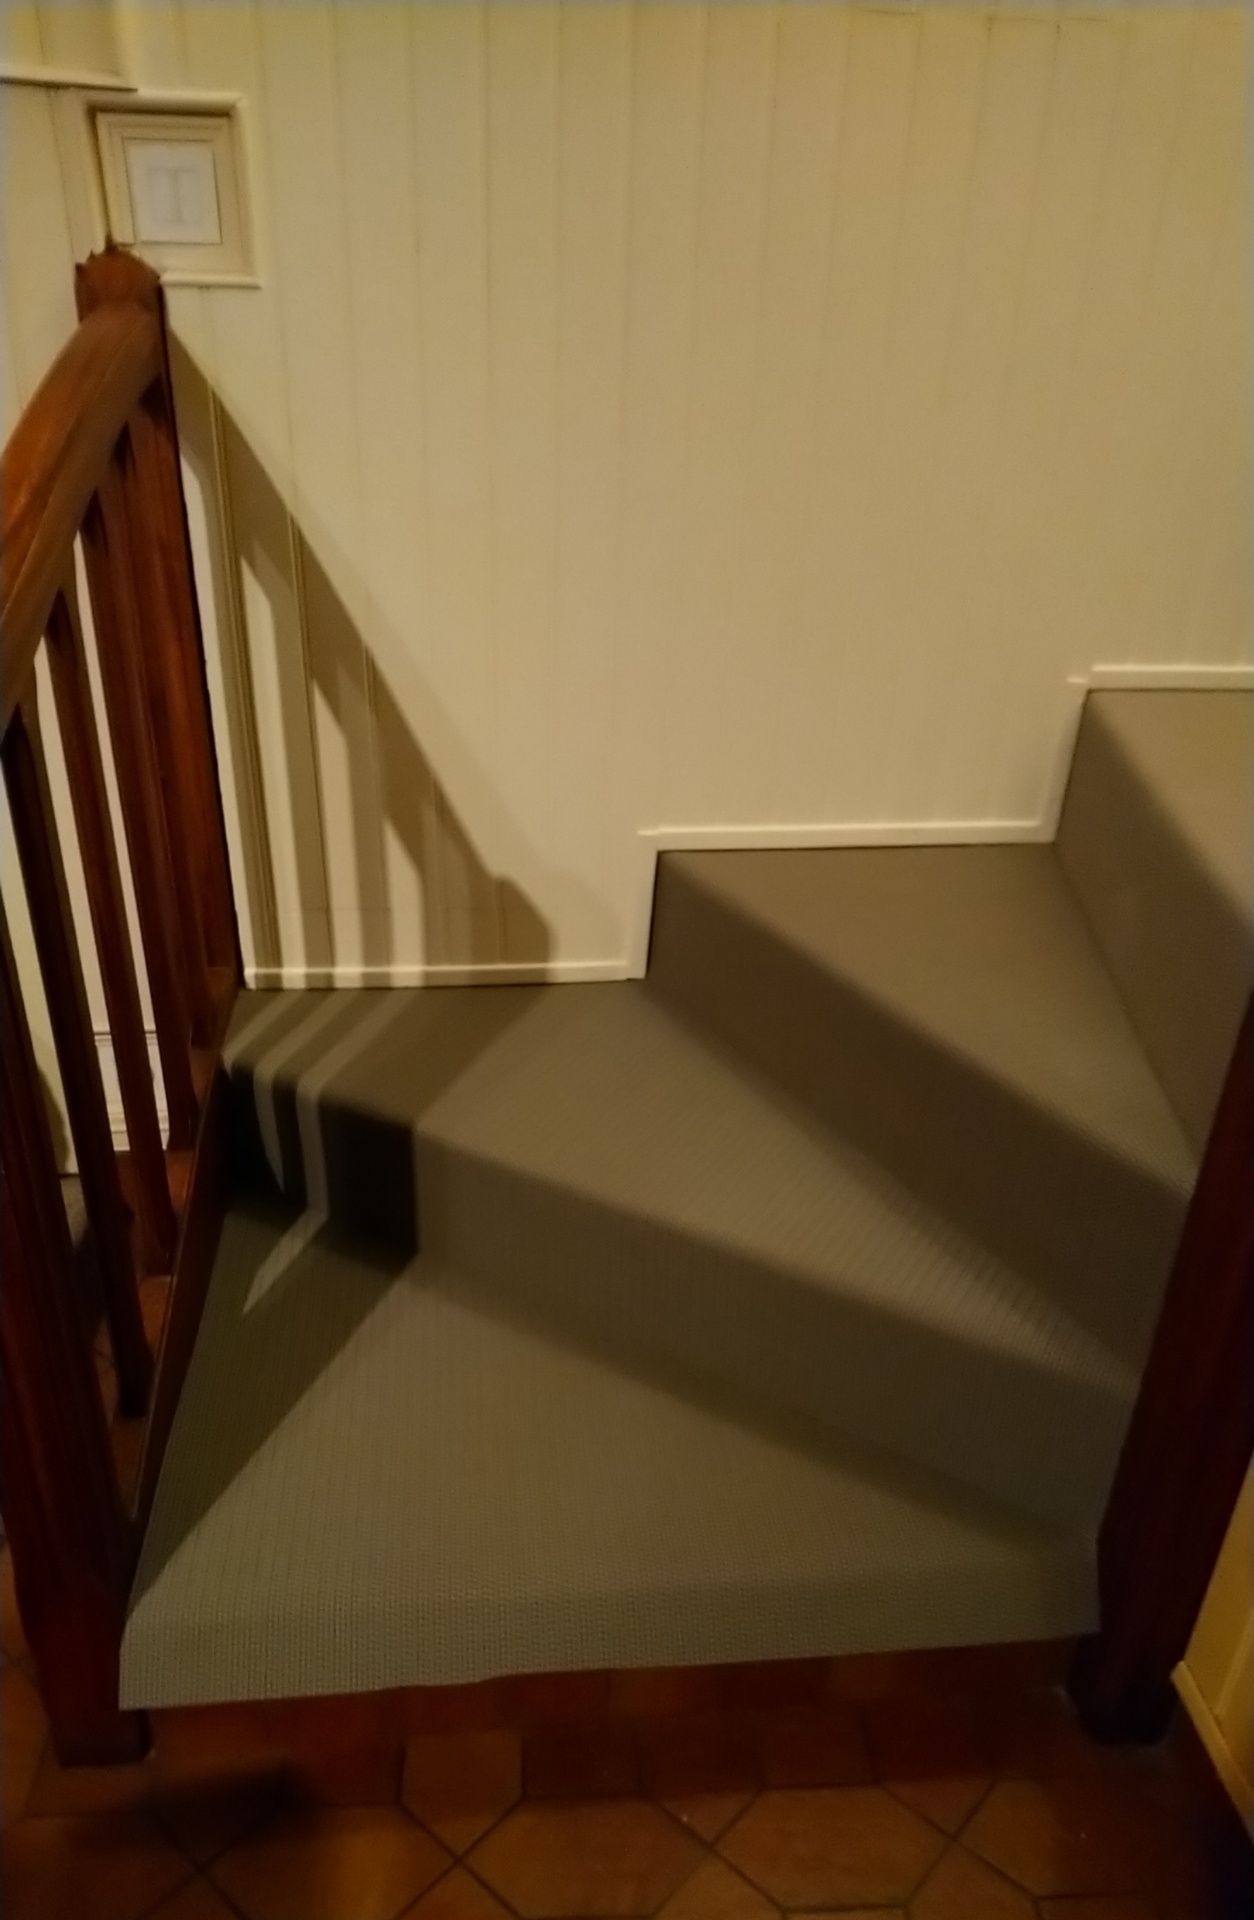 Ref vign corefi renovation escalier dickson 1